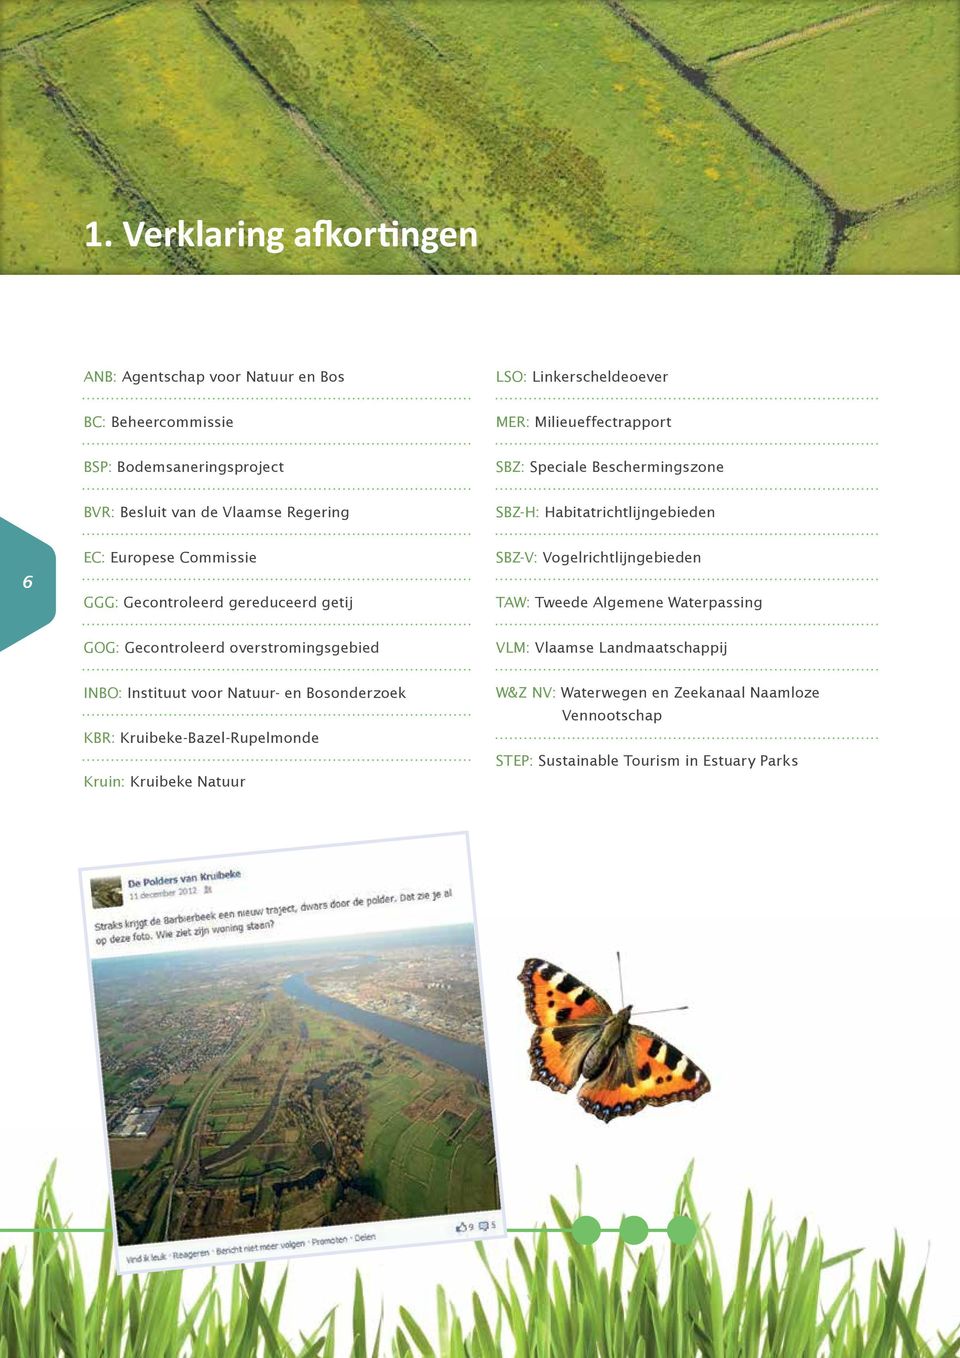 SBZ-V: Vogelrichtlijngebieden TAW: Tweede Algemene Waterpassing GOG: Gecontroleerd overstromingsgebied VLM: Vlaamse Landmaatschappij INBO: Instituut voor Natuur-